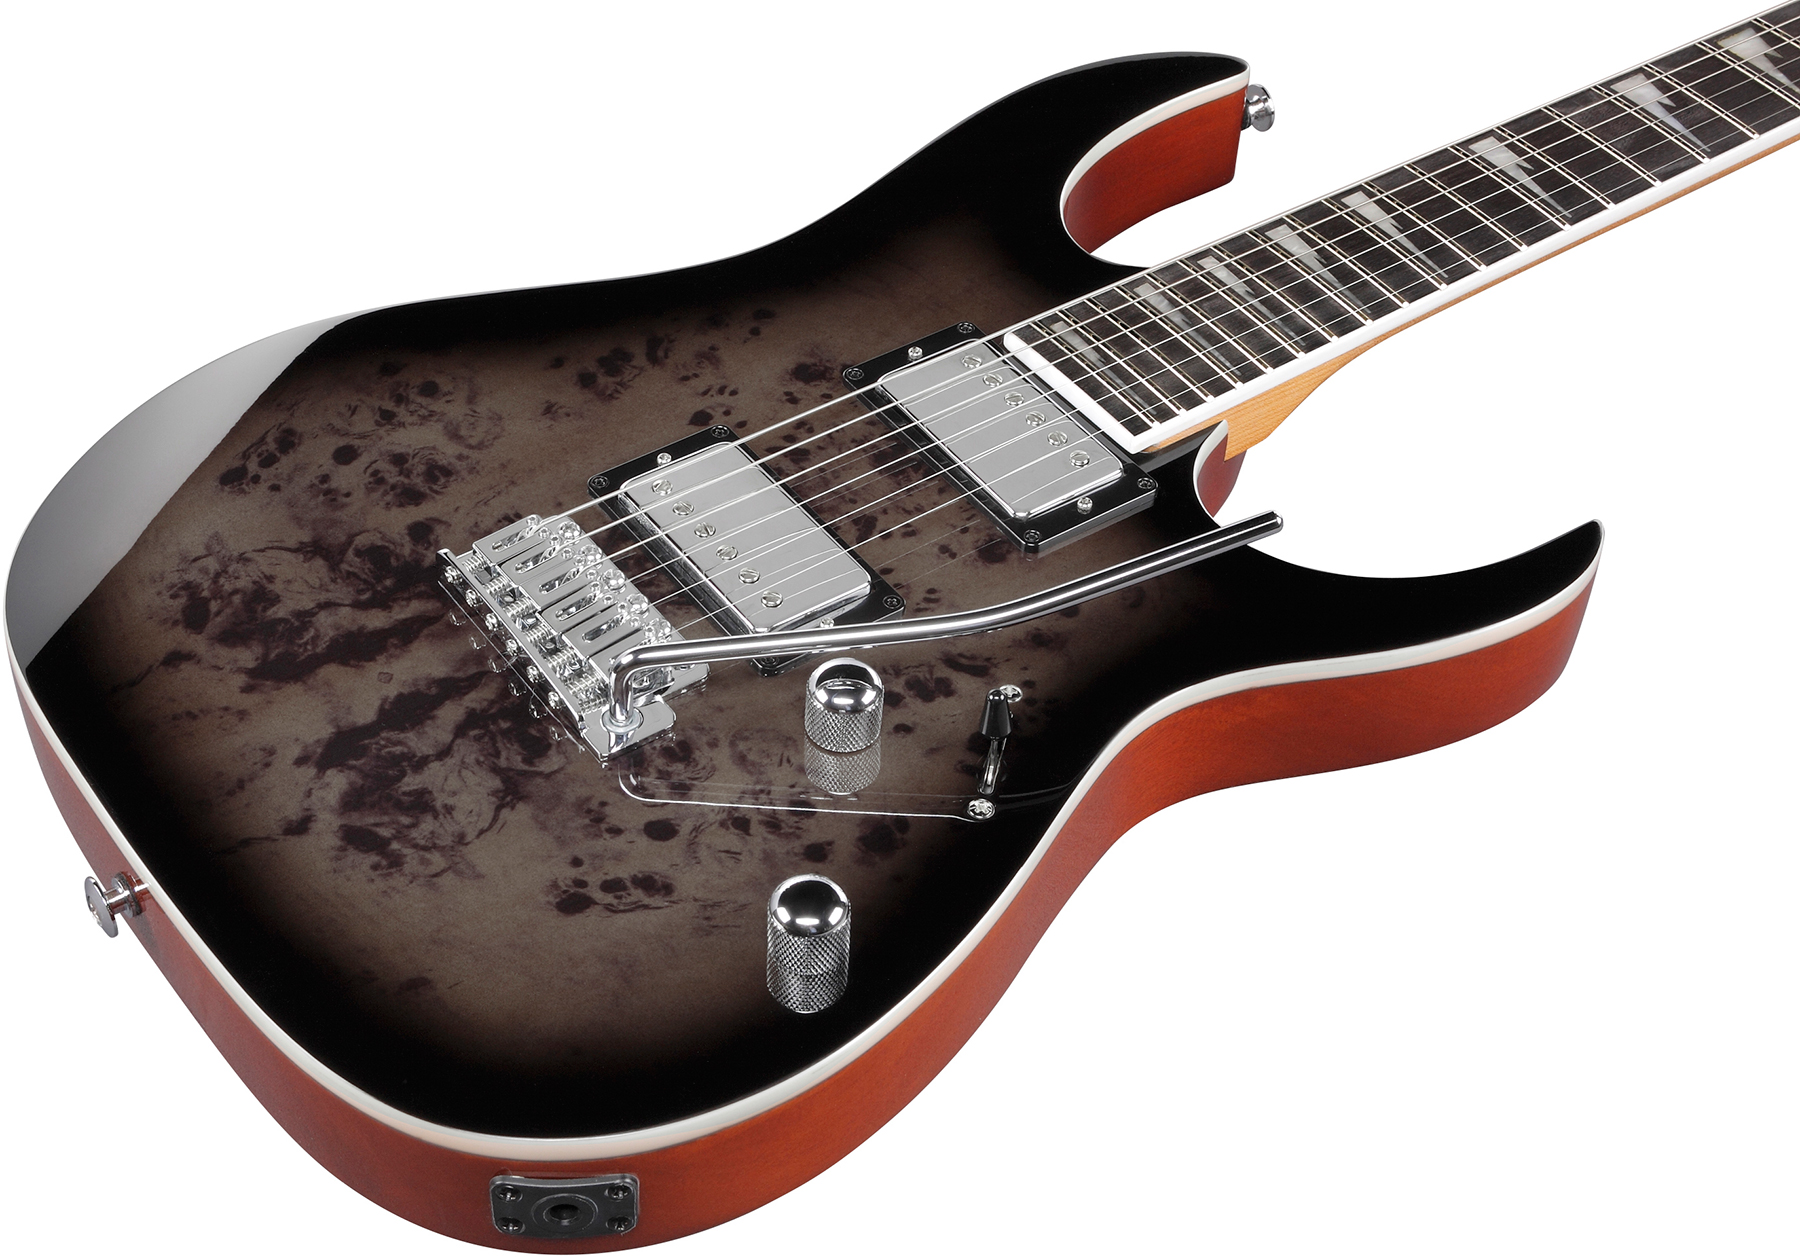 Ibanez Grg220pa1 Bkb Gio 2h Trem Pur - Transparent Brown Black Burst - Str shape electric guitar - Variation 2